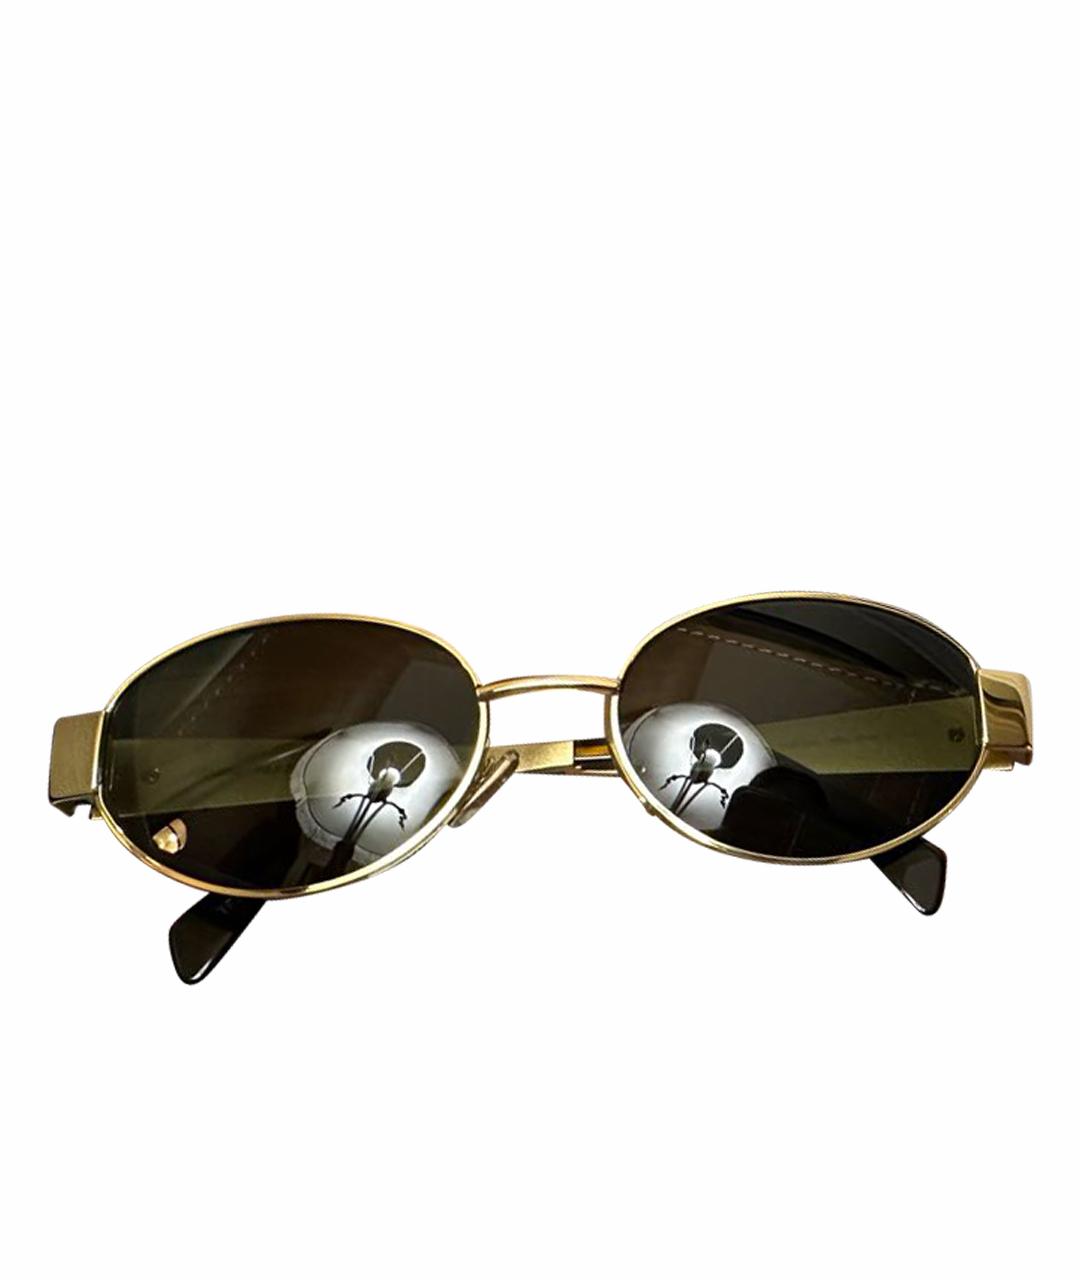 CELINE PRE-OWNED Черные металлические солнцезащитные очки, фото 1